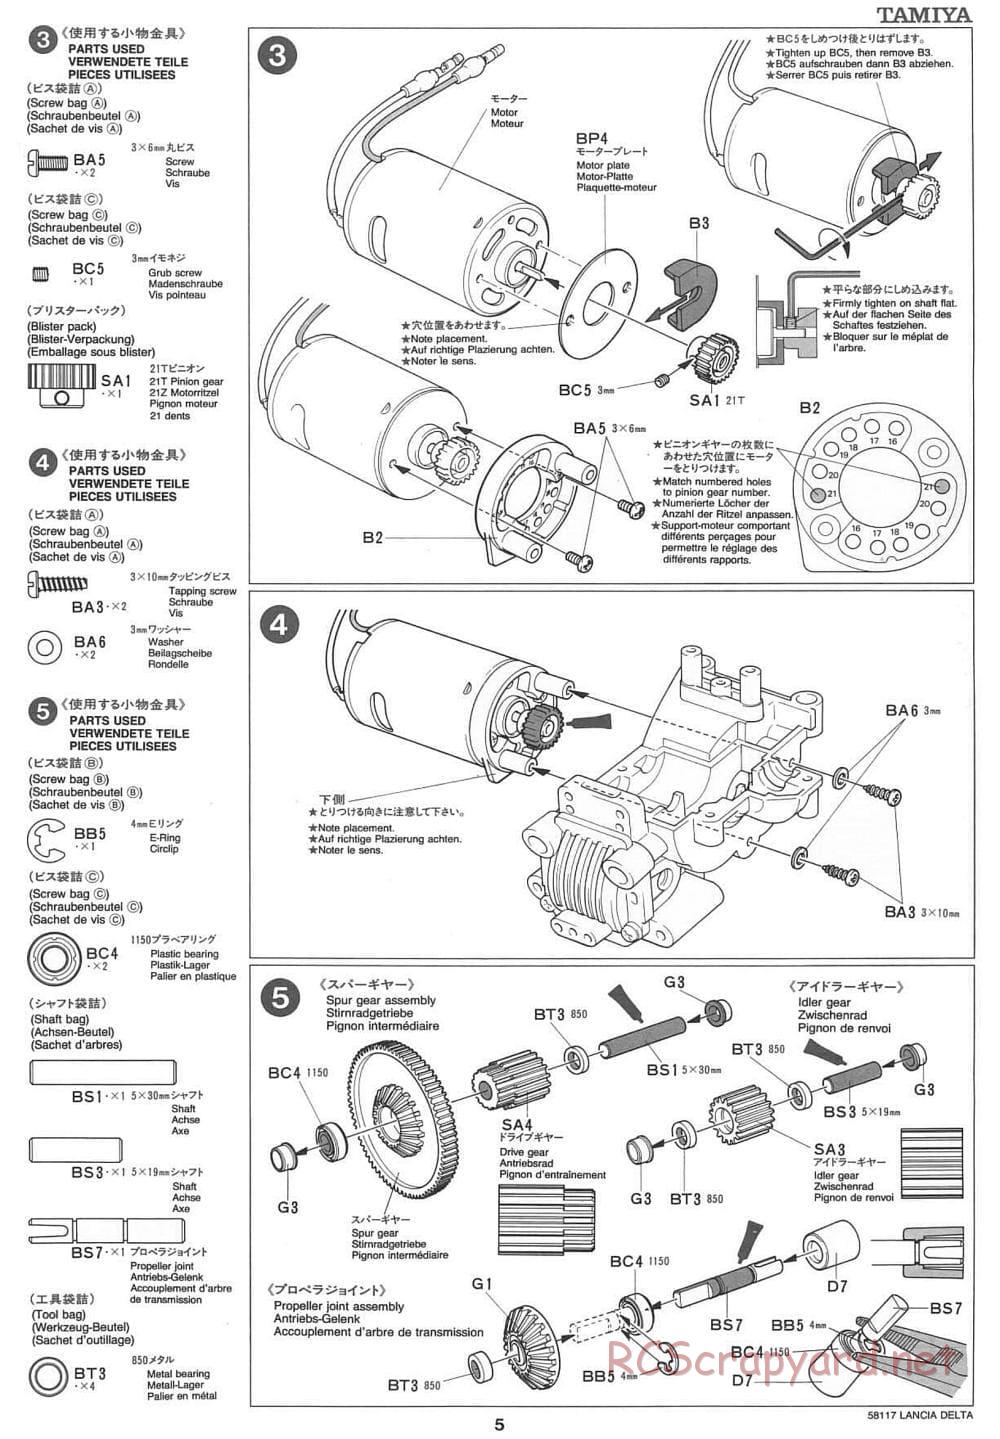 Tamiya - Lancia Delta HF Integrale - TA-01 Chassis - Manual - Page 5